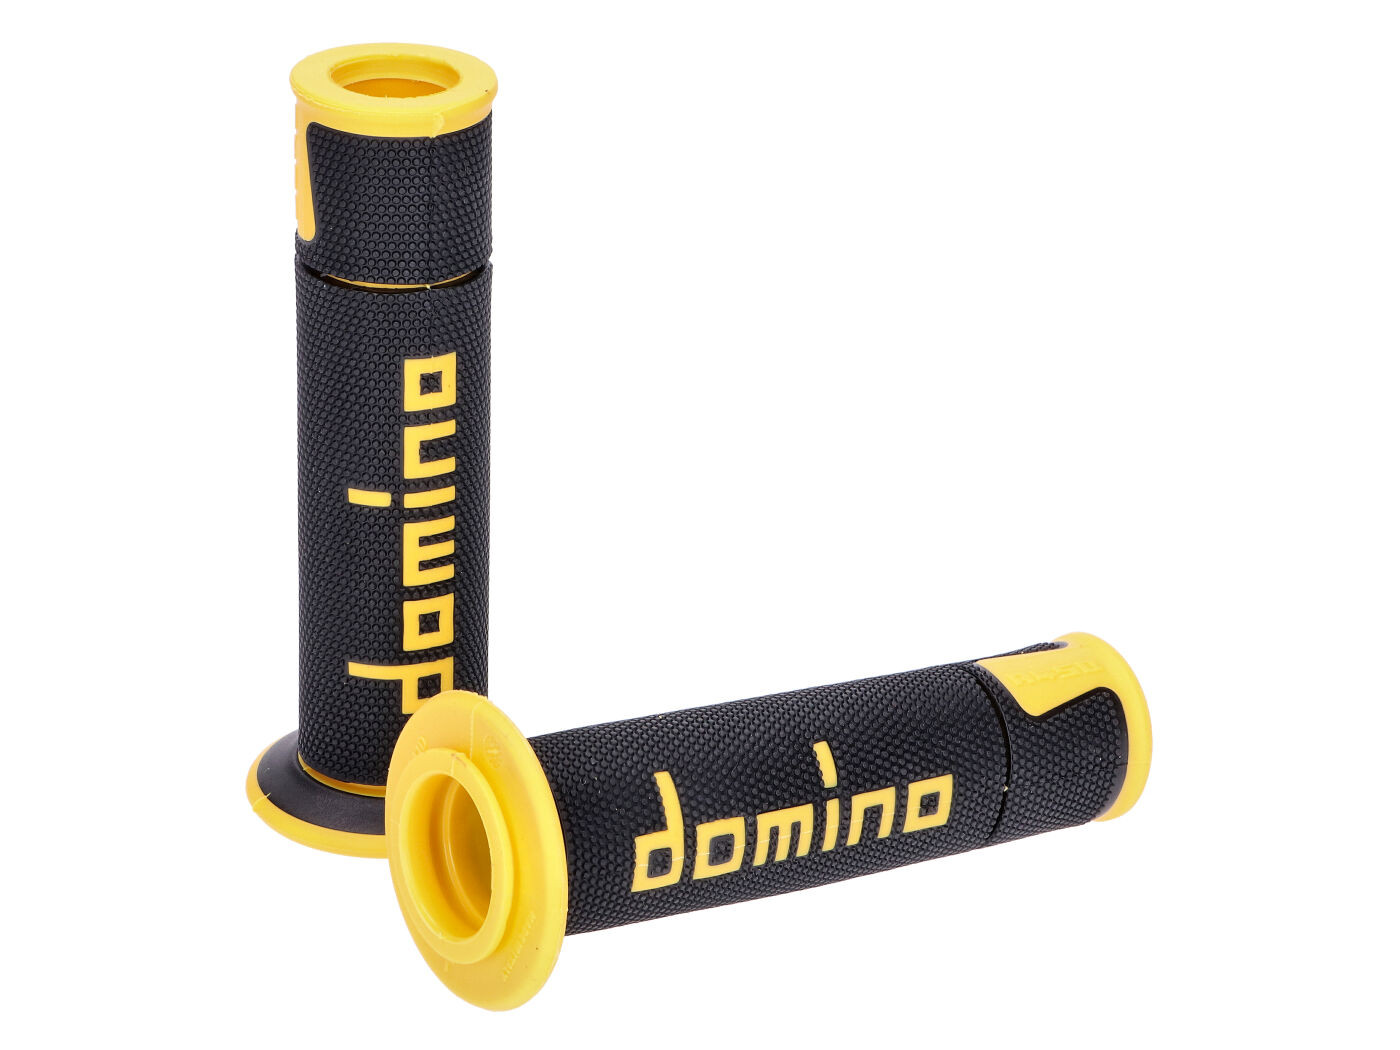 Domino A450 on-road verseny fekete/sárga nyitott végű kormánymarkolat szett